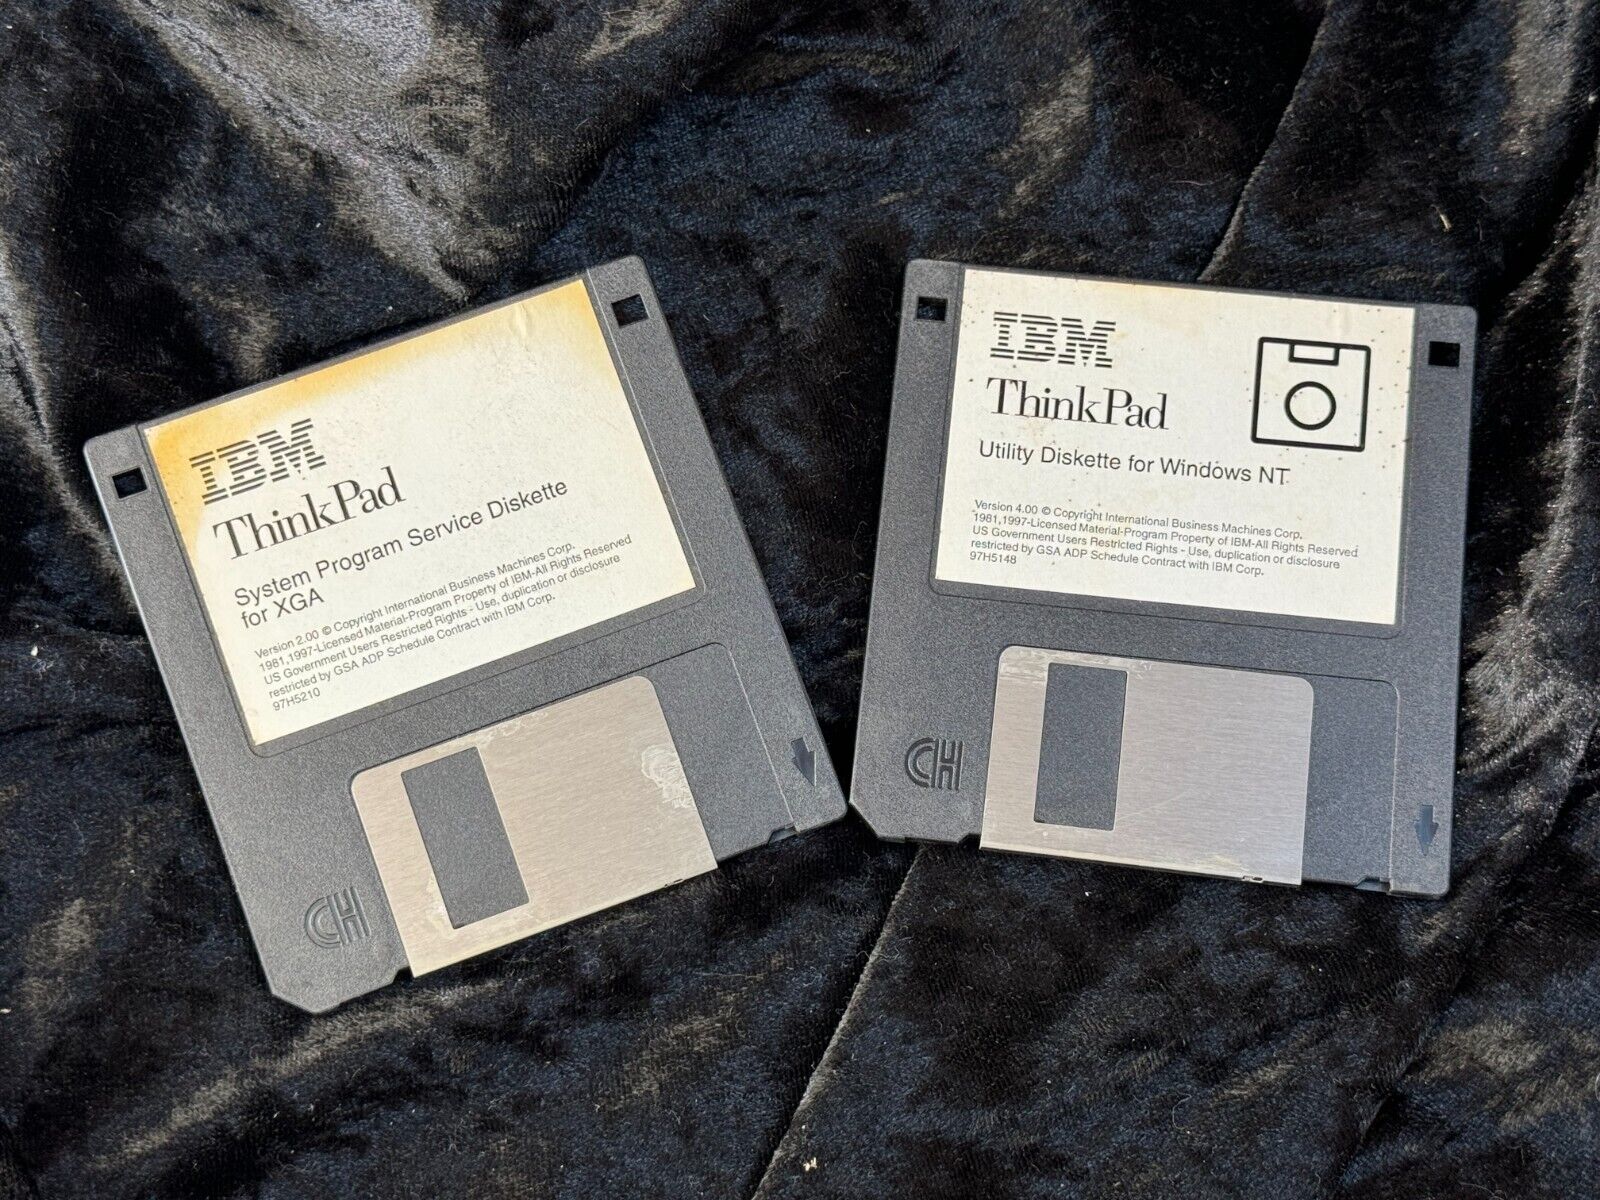 IBM Thinkpad System Program Service / Utility Disk 3.5 Floppy Media